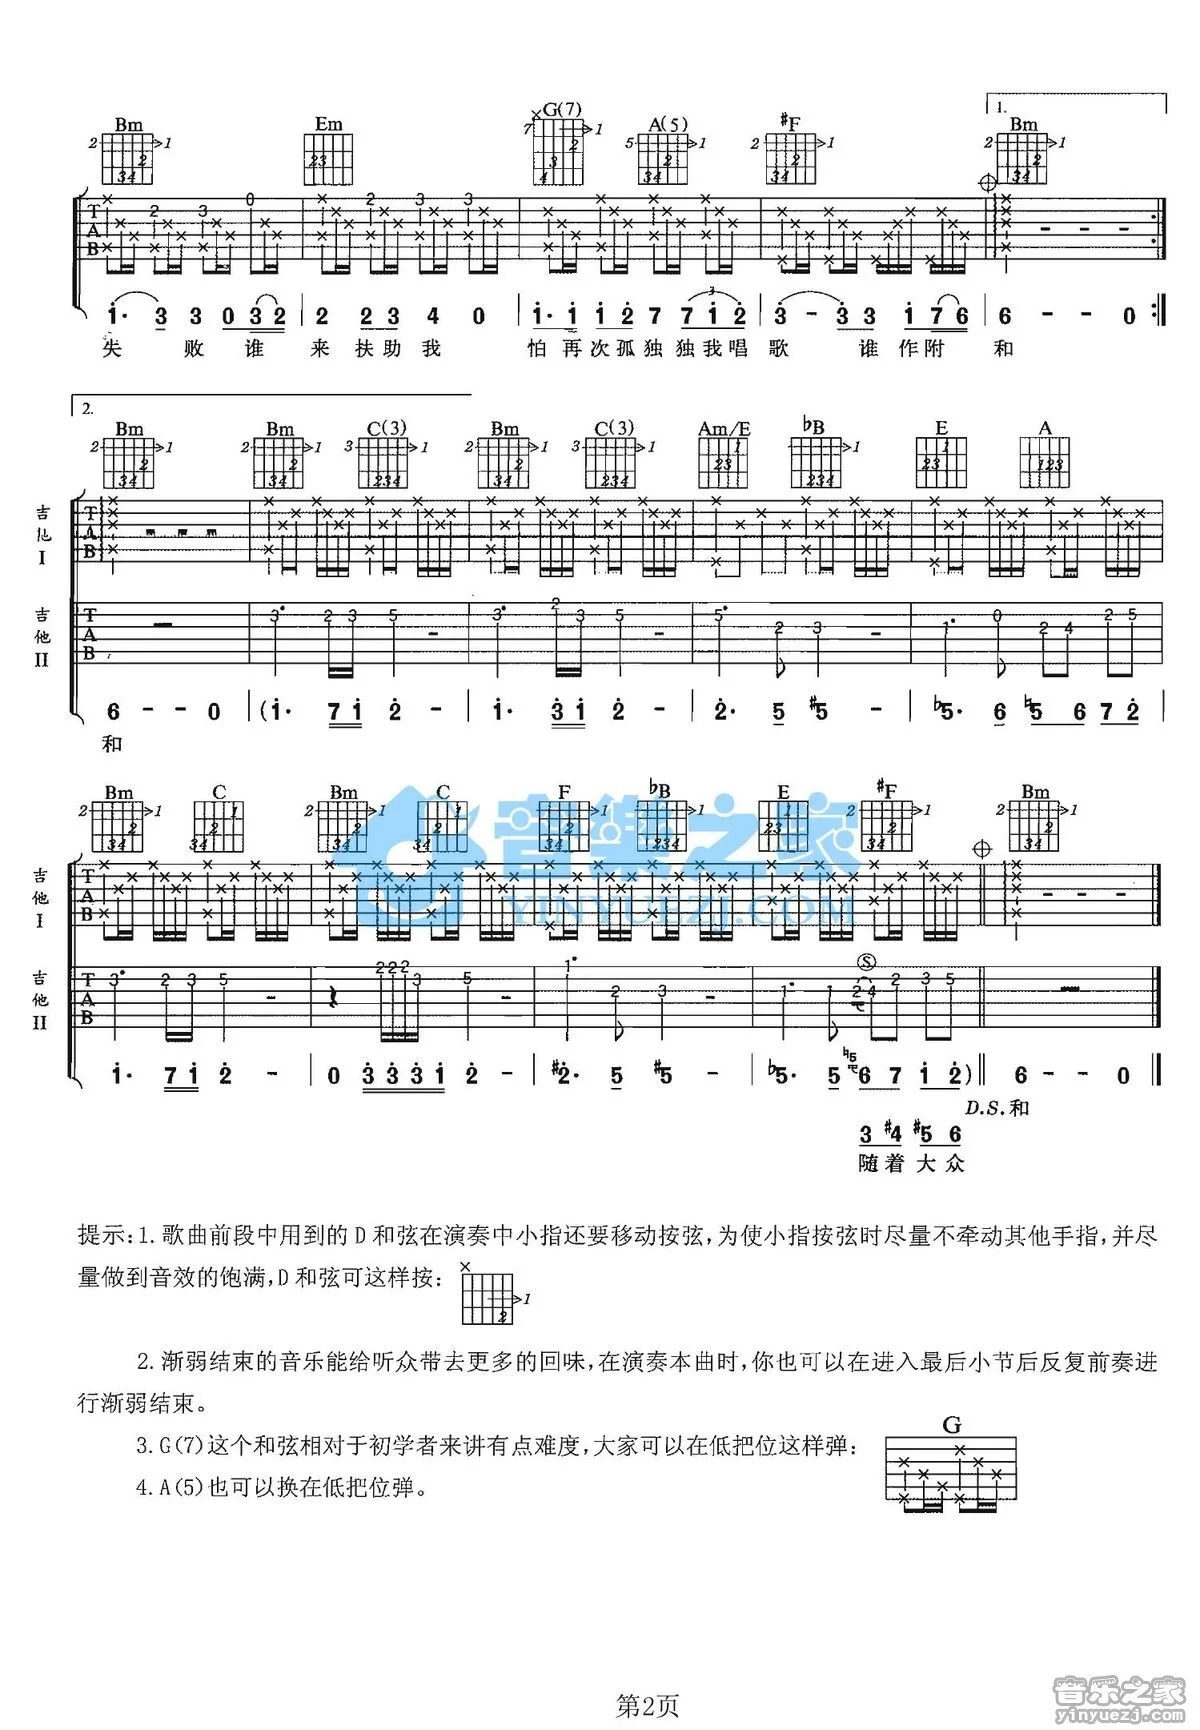 琵琶语 （双吉他谱）_侍书琴社工作室个人制谱园地_中国曲谱网